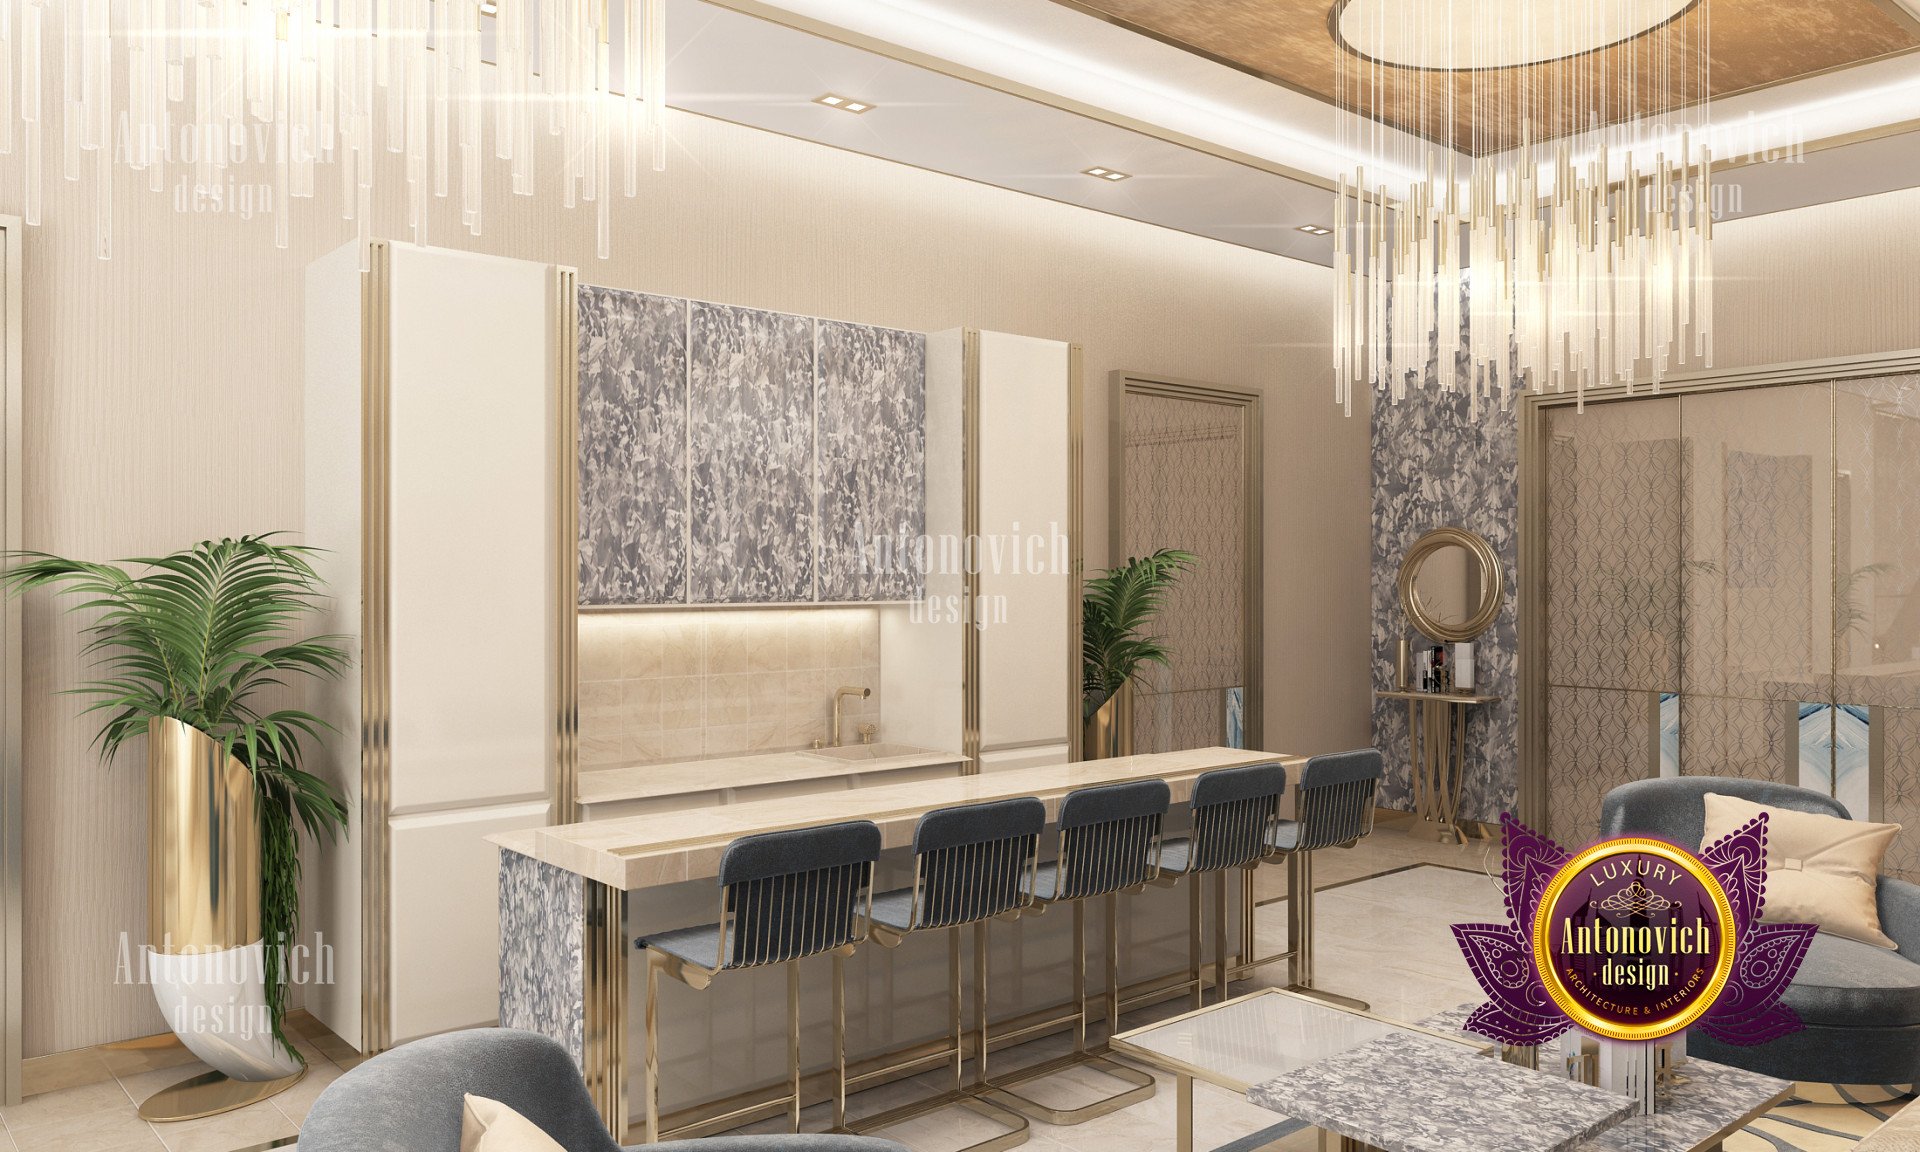 Luxurious interior designing luxury interior design company in California